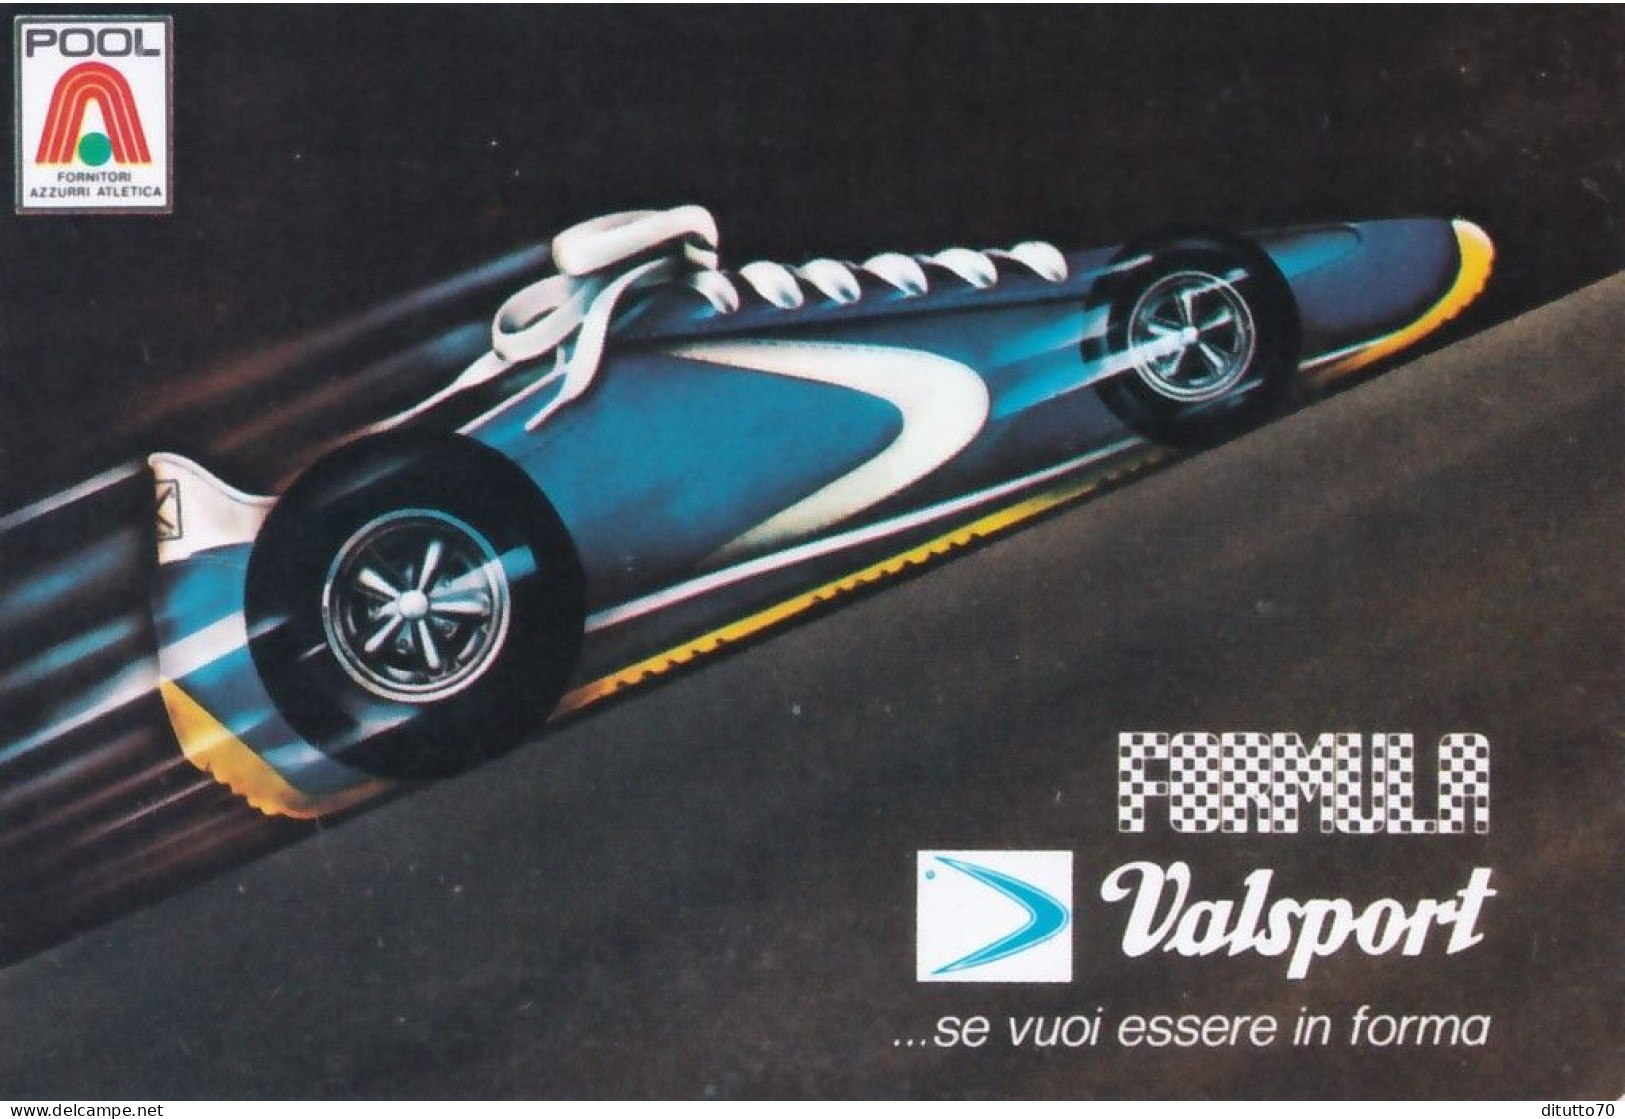 Calendarietto - Valsport - Anno 1977 - Small : 1971-80